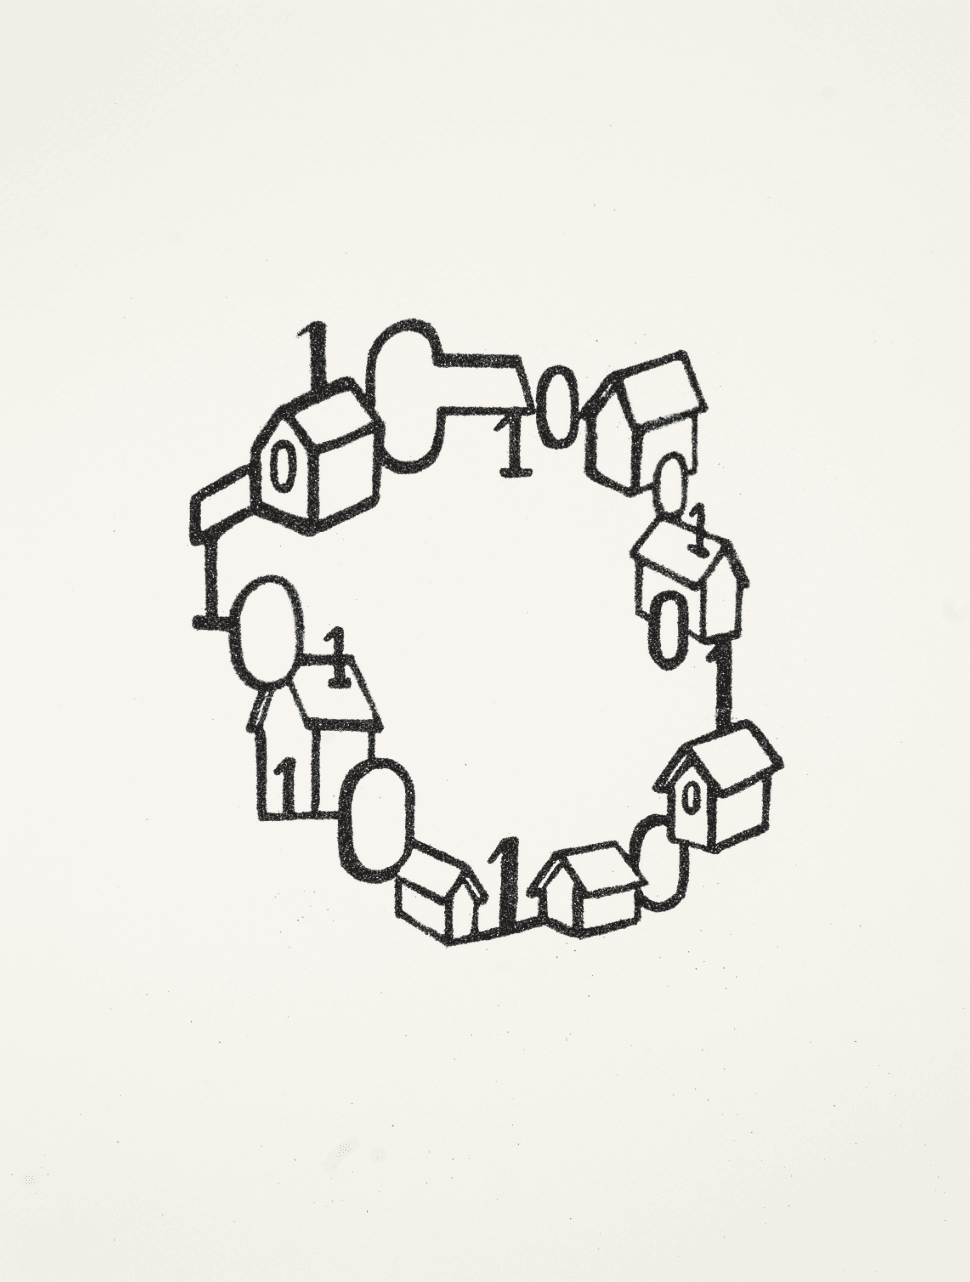 Zwart-wit tekening waarop met nullen en enen gebouwen verbinden. Onderdeel van het kunstwerk '01 is Fun' van kunstenaar Vittorio Roerade.